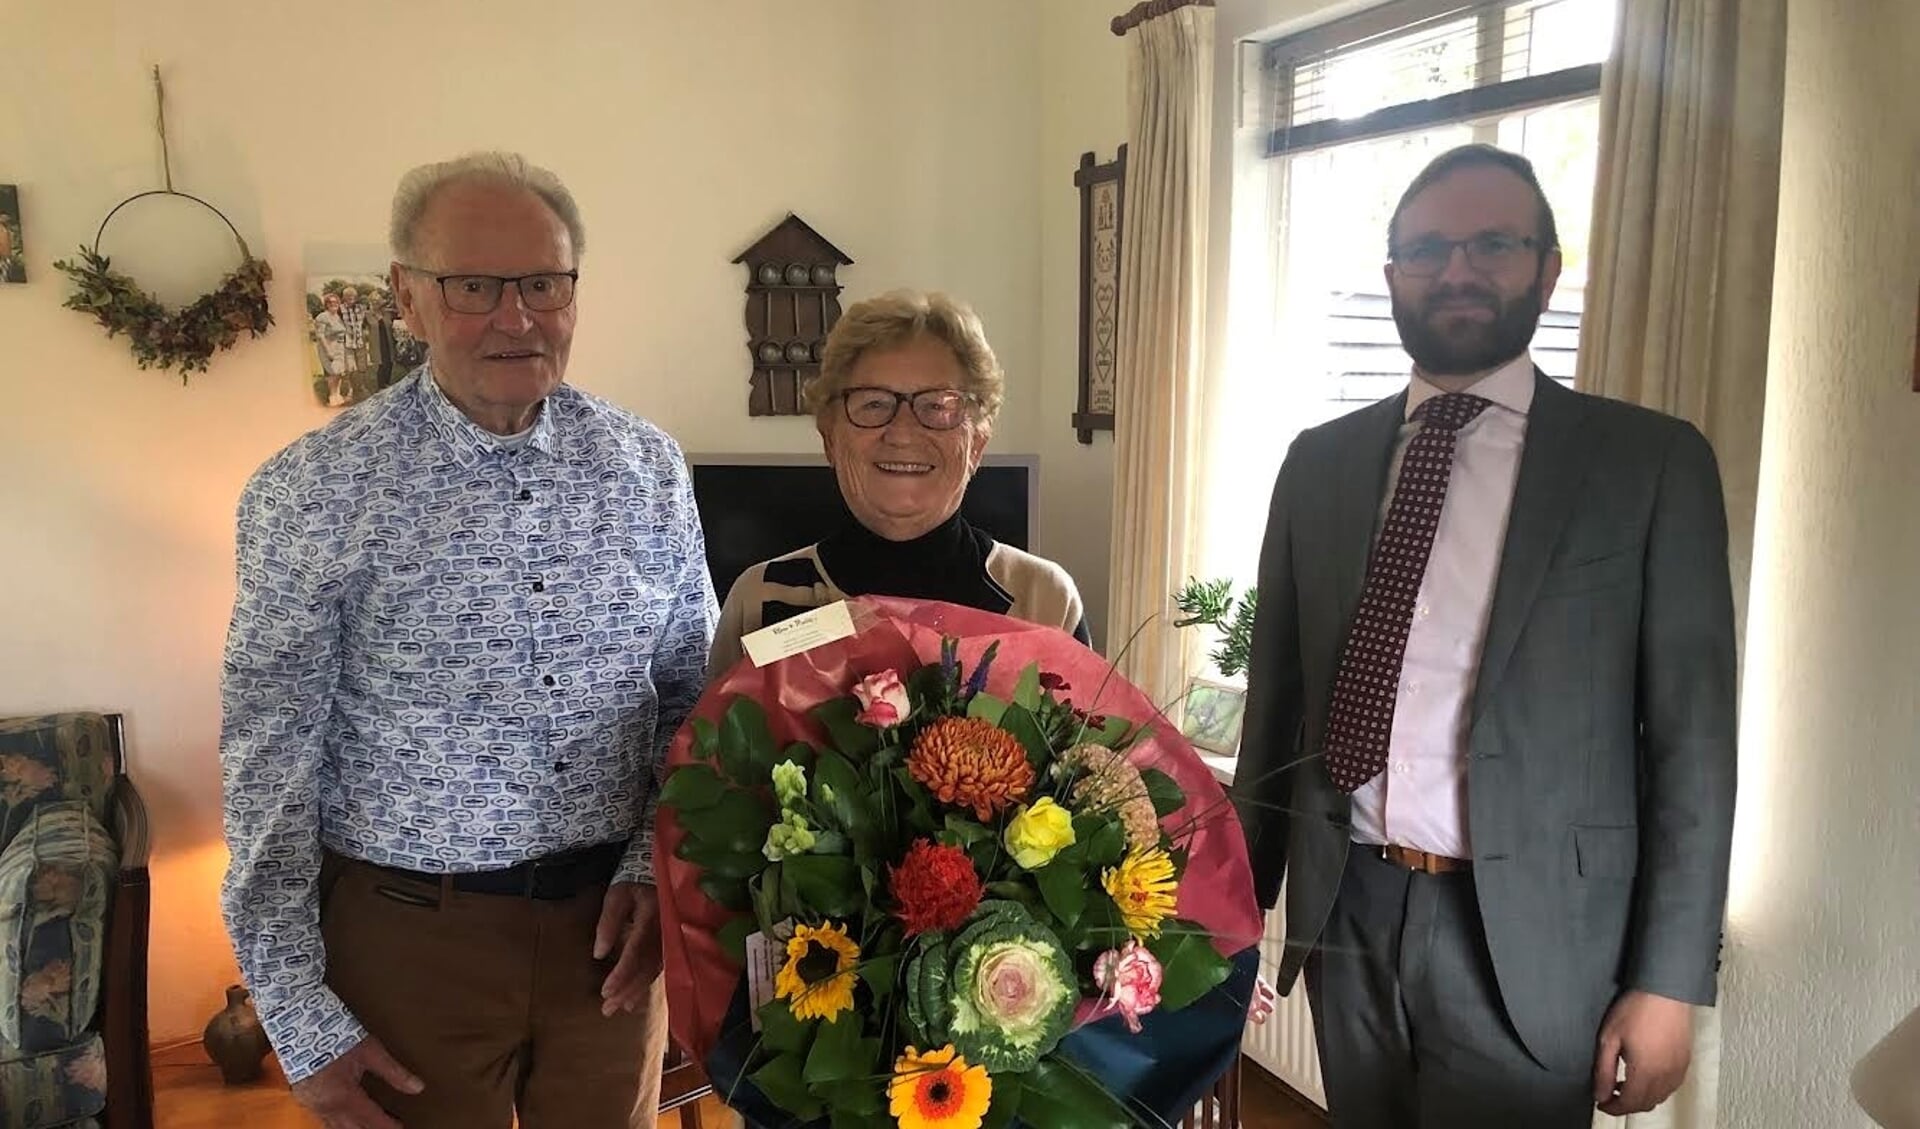 Namens de gemeente Berkelland kwam wethouder Gert Jan Teselink (r.) de felicitaties aan Herman en Hendrika Lievestro overbrengen. Foto: PR 